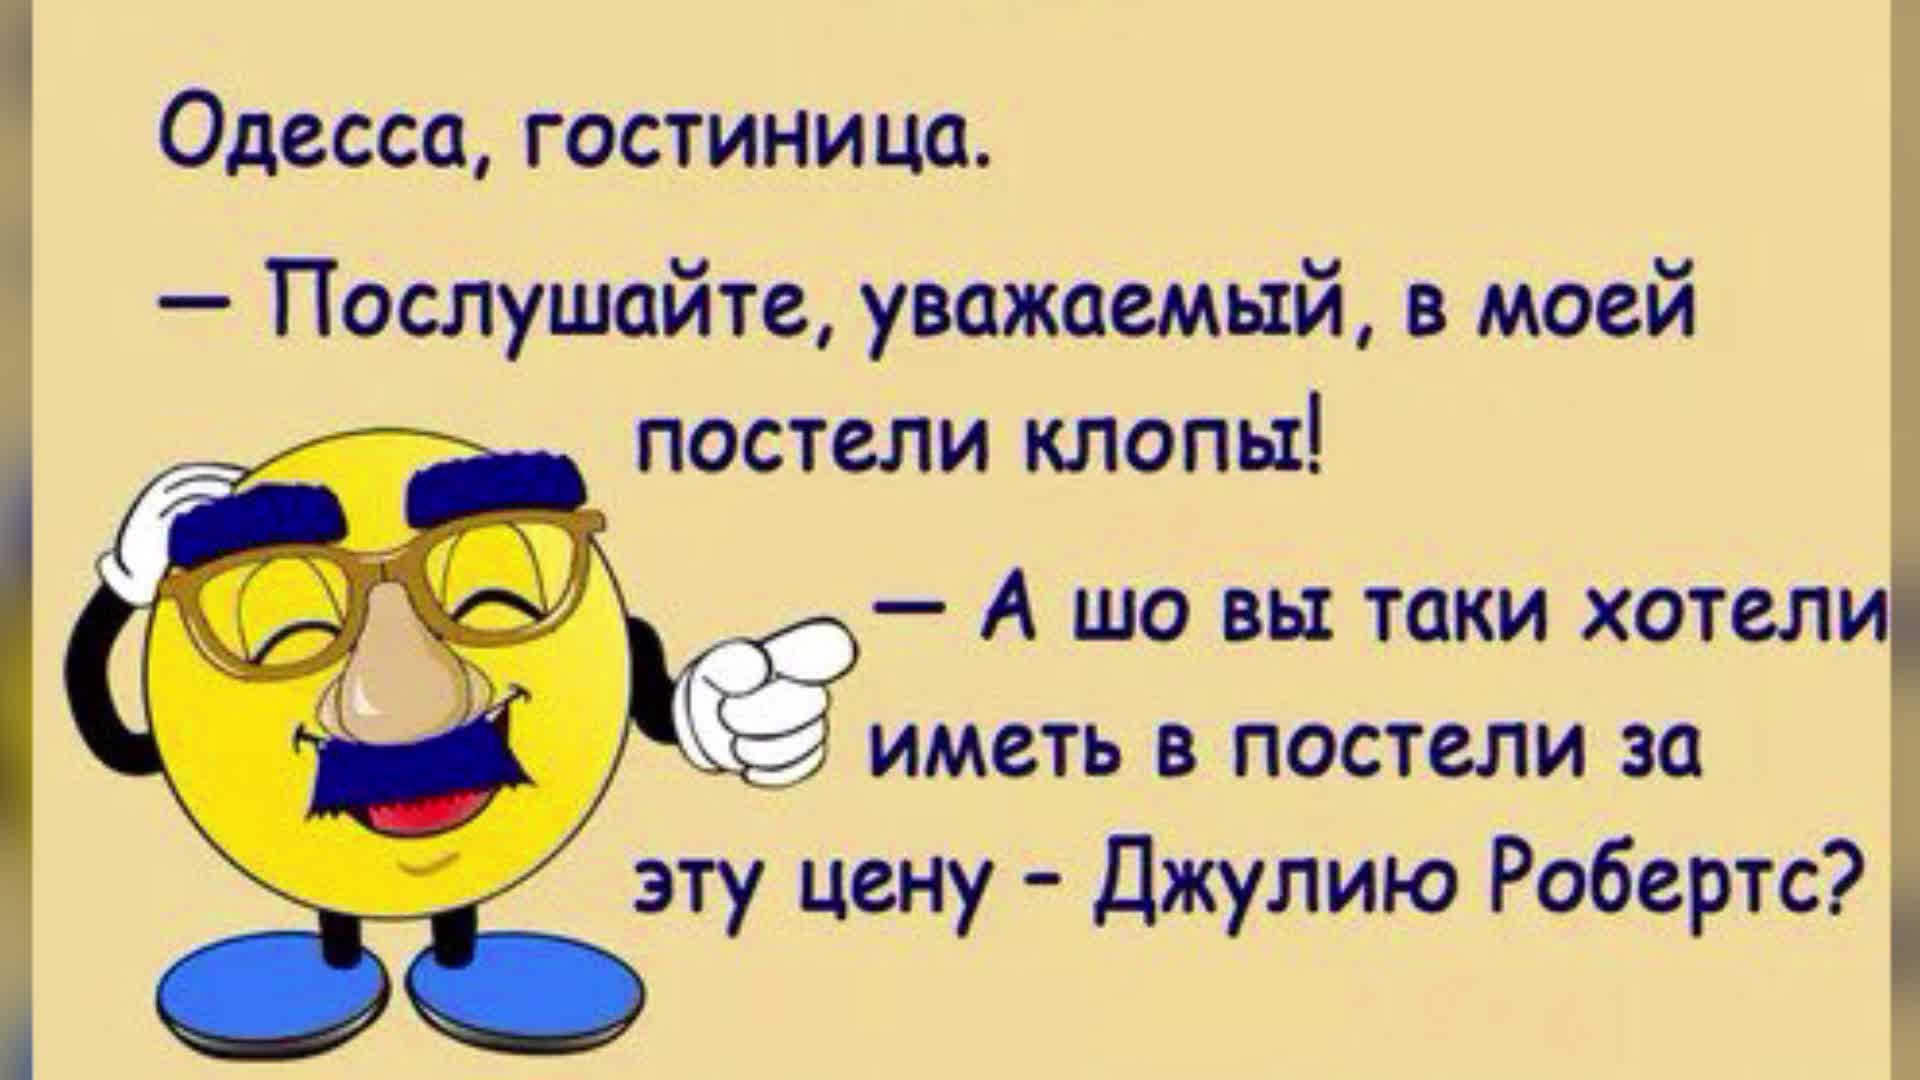 Одесские анекдоты слушать. Одесские анекдоты. Одесские анекдоты свежие. Одесские анекдоты свежие смешные. Одесские анекдоты самые смешные.